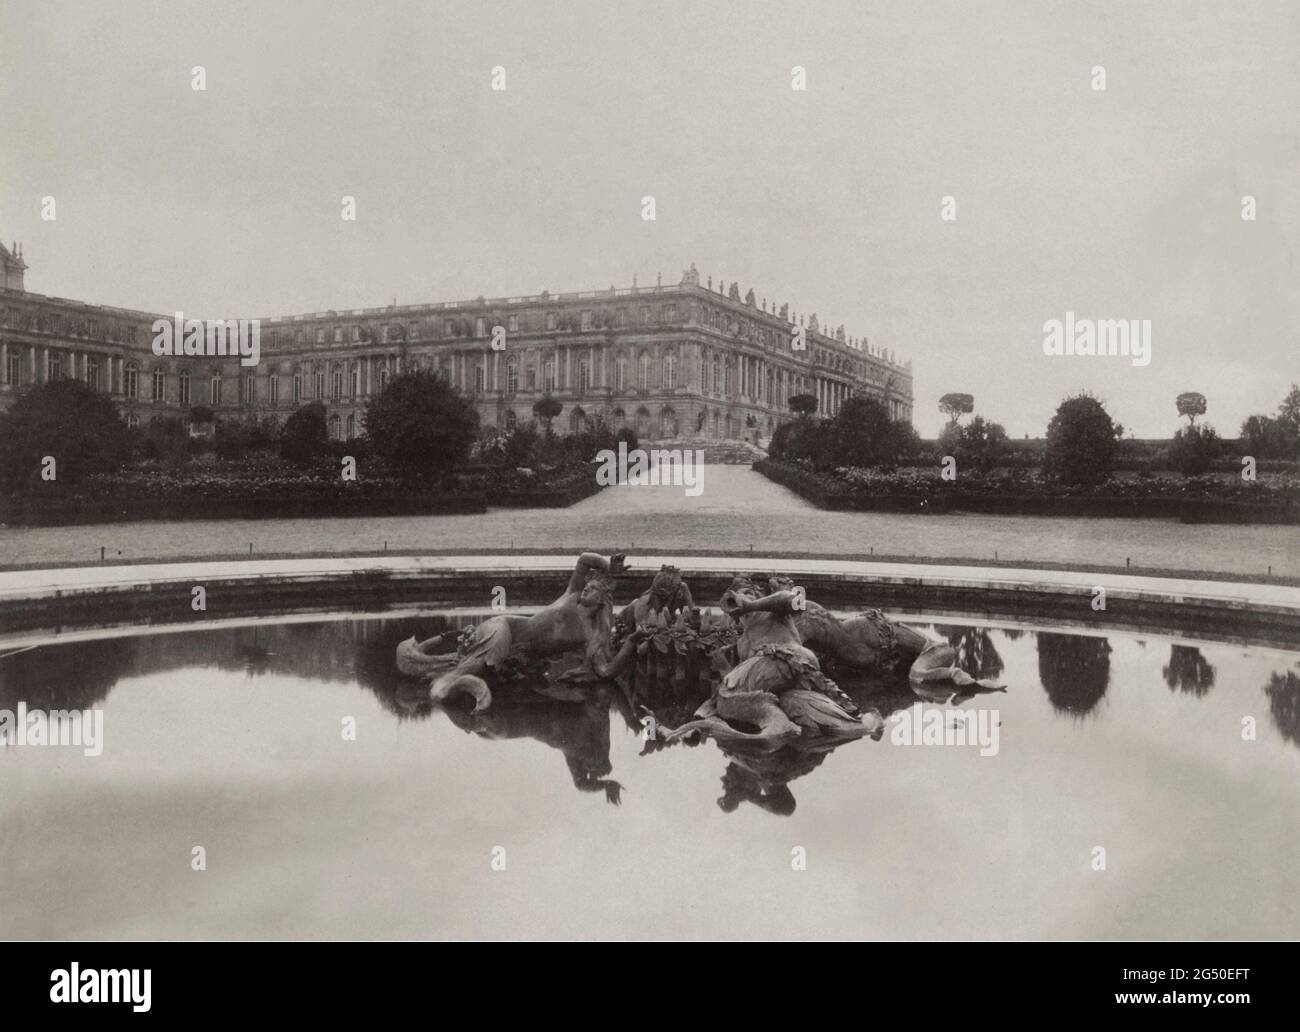 Vintage-Foto des Versailles des 19. Jahrhunderts: Das Schloss von Versailles, Blick vom nördlichen Parterre. Frankreich. Von Eugene Atget (1857-1927). Stockfoto